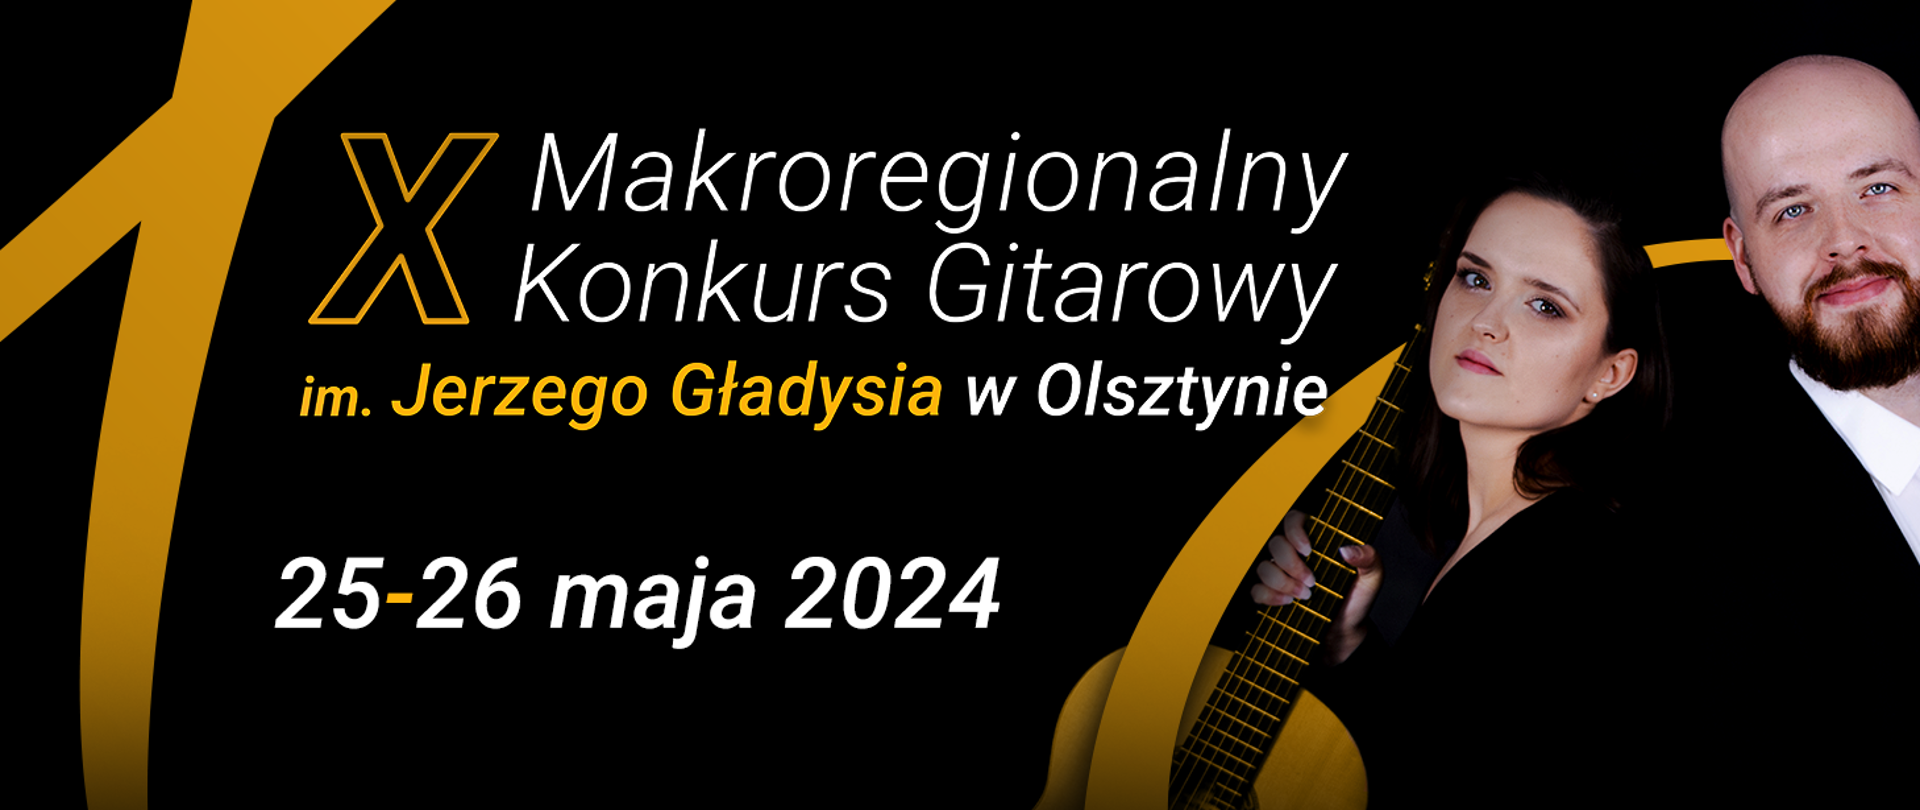 Baner X Makroregionalnego Konkursu Gitarowego im. Jerzego Gładysia w Olsztynie. Czarne tło z dwoma gitarzystami (kobieta i mężczyzna) po prawej stronie grafiki.